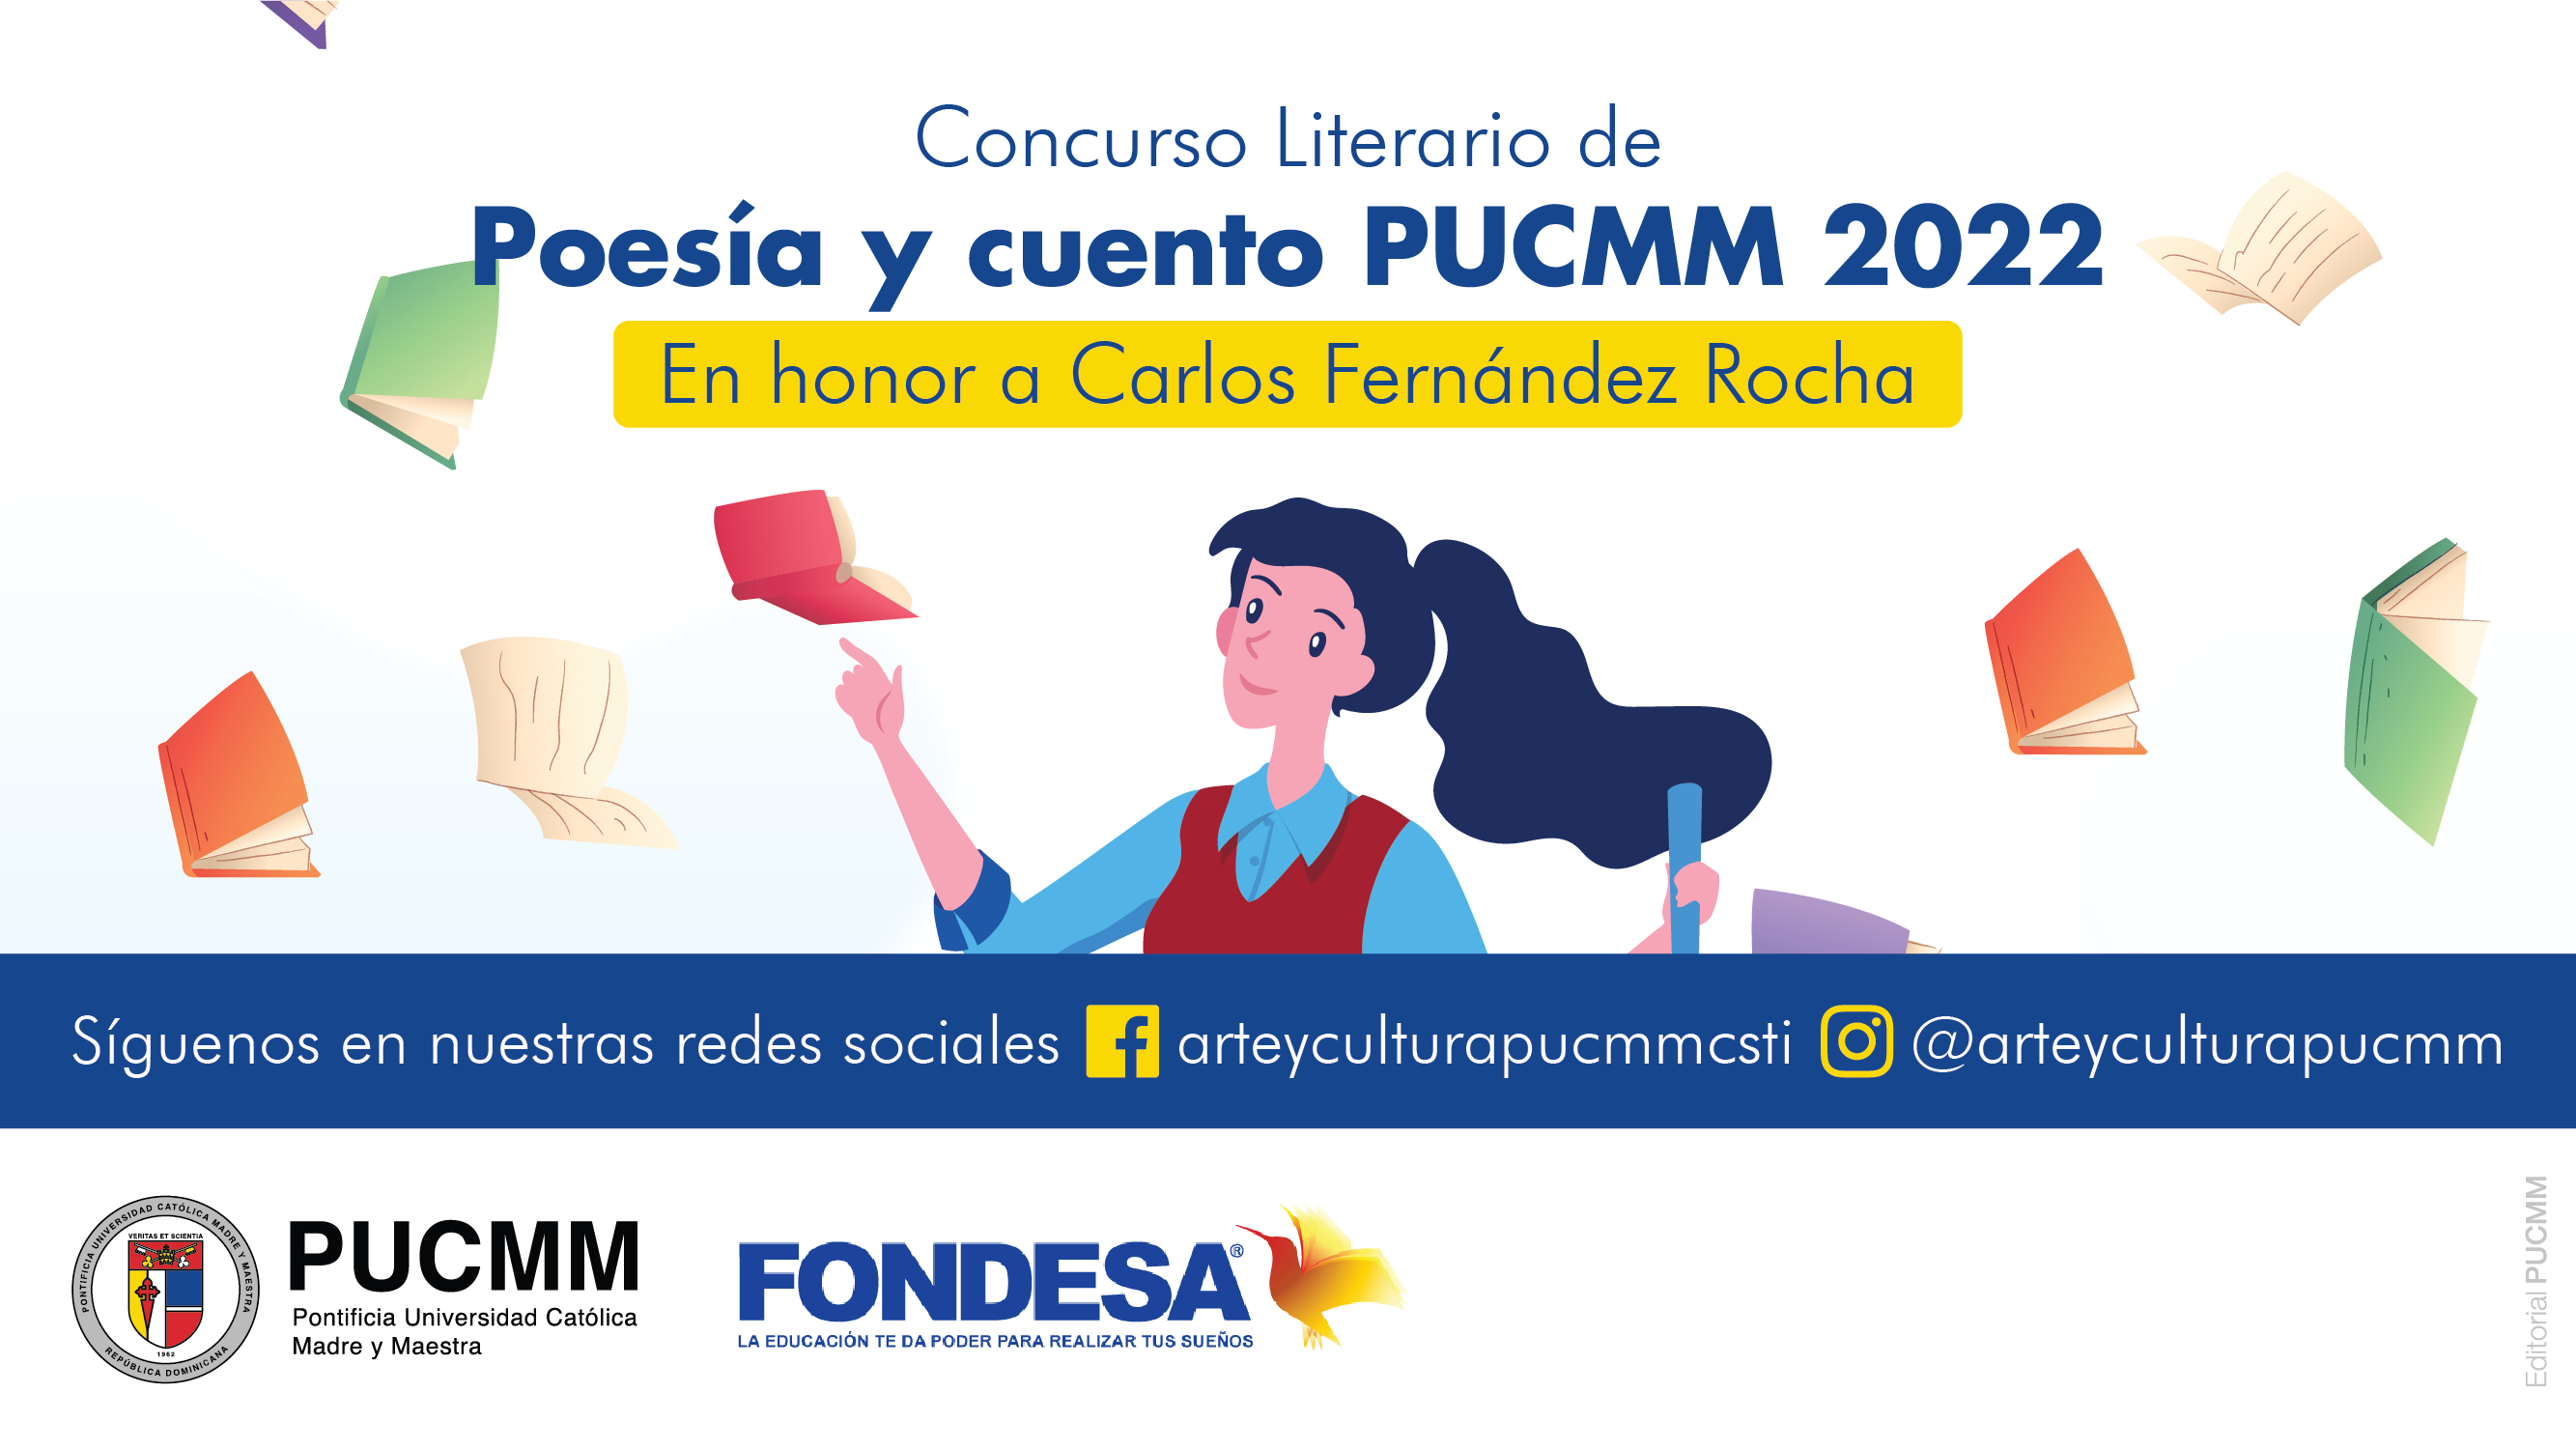 Concurso literario de Poesía y Cuento PUCMM 2022